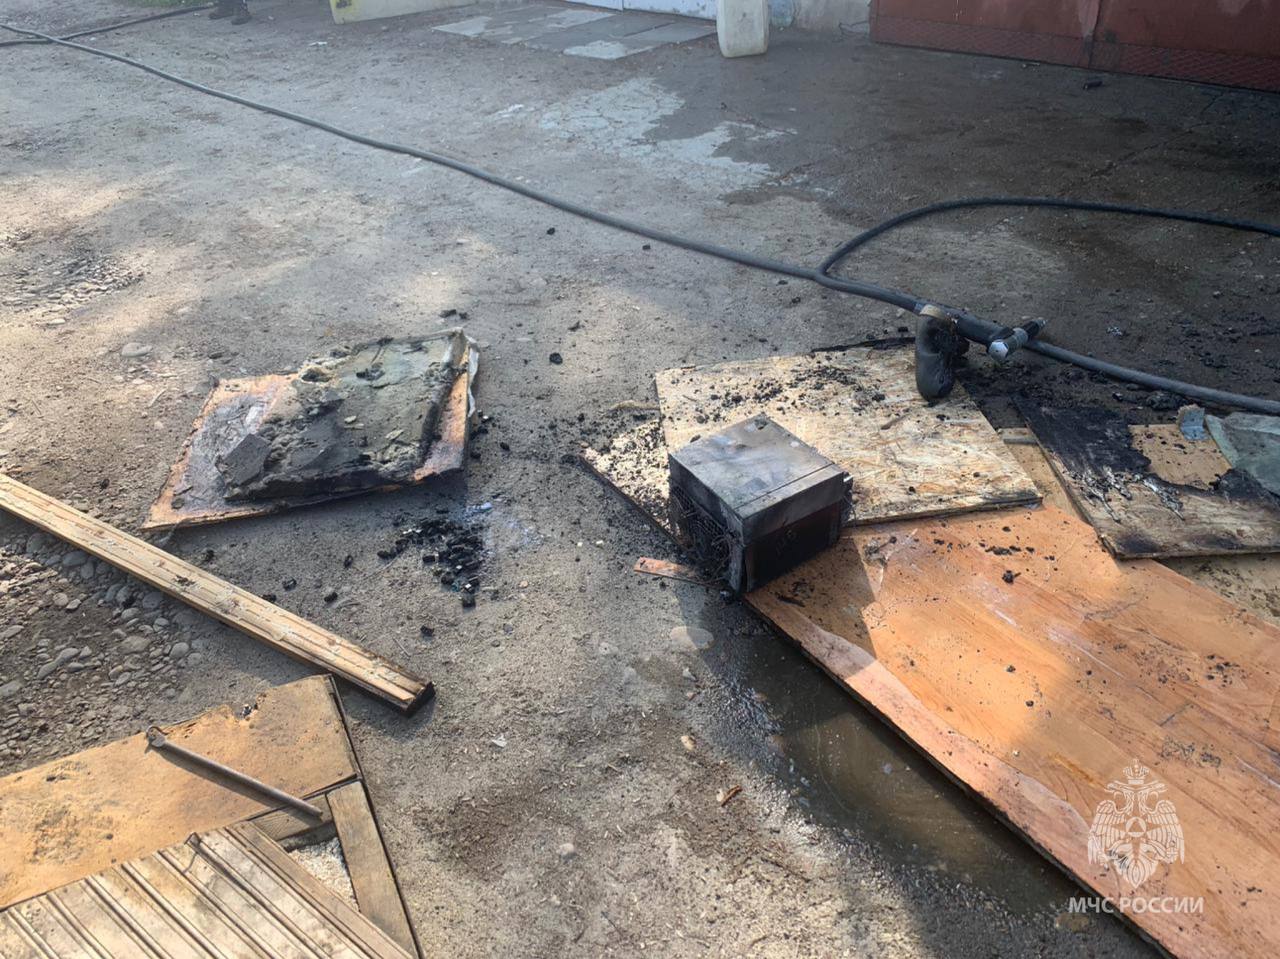 Пожар произошел в гаражном кооперативе в Ангарске из-за майнинга